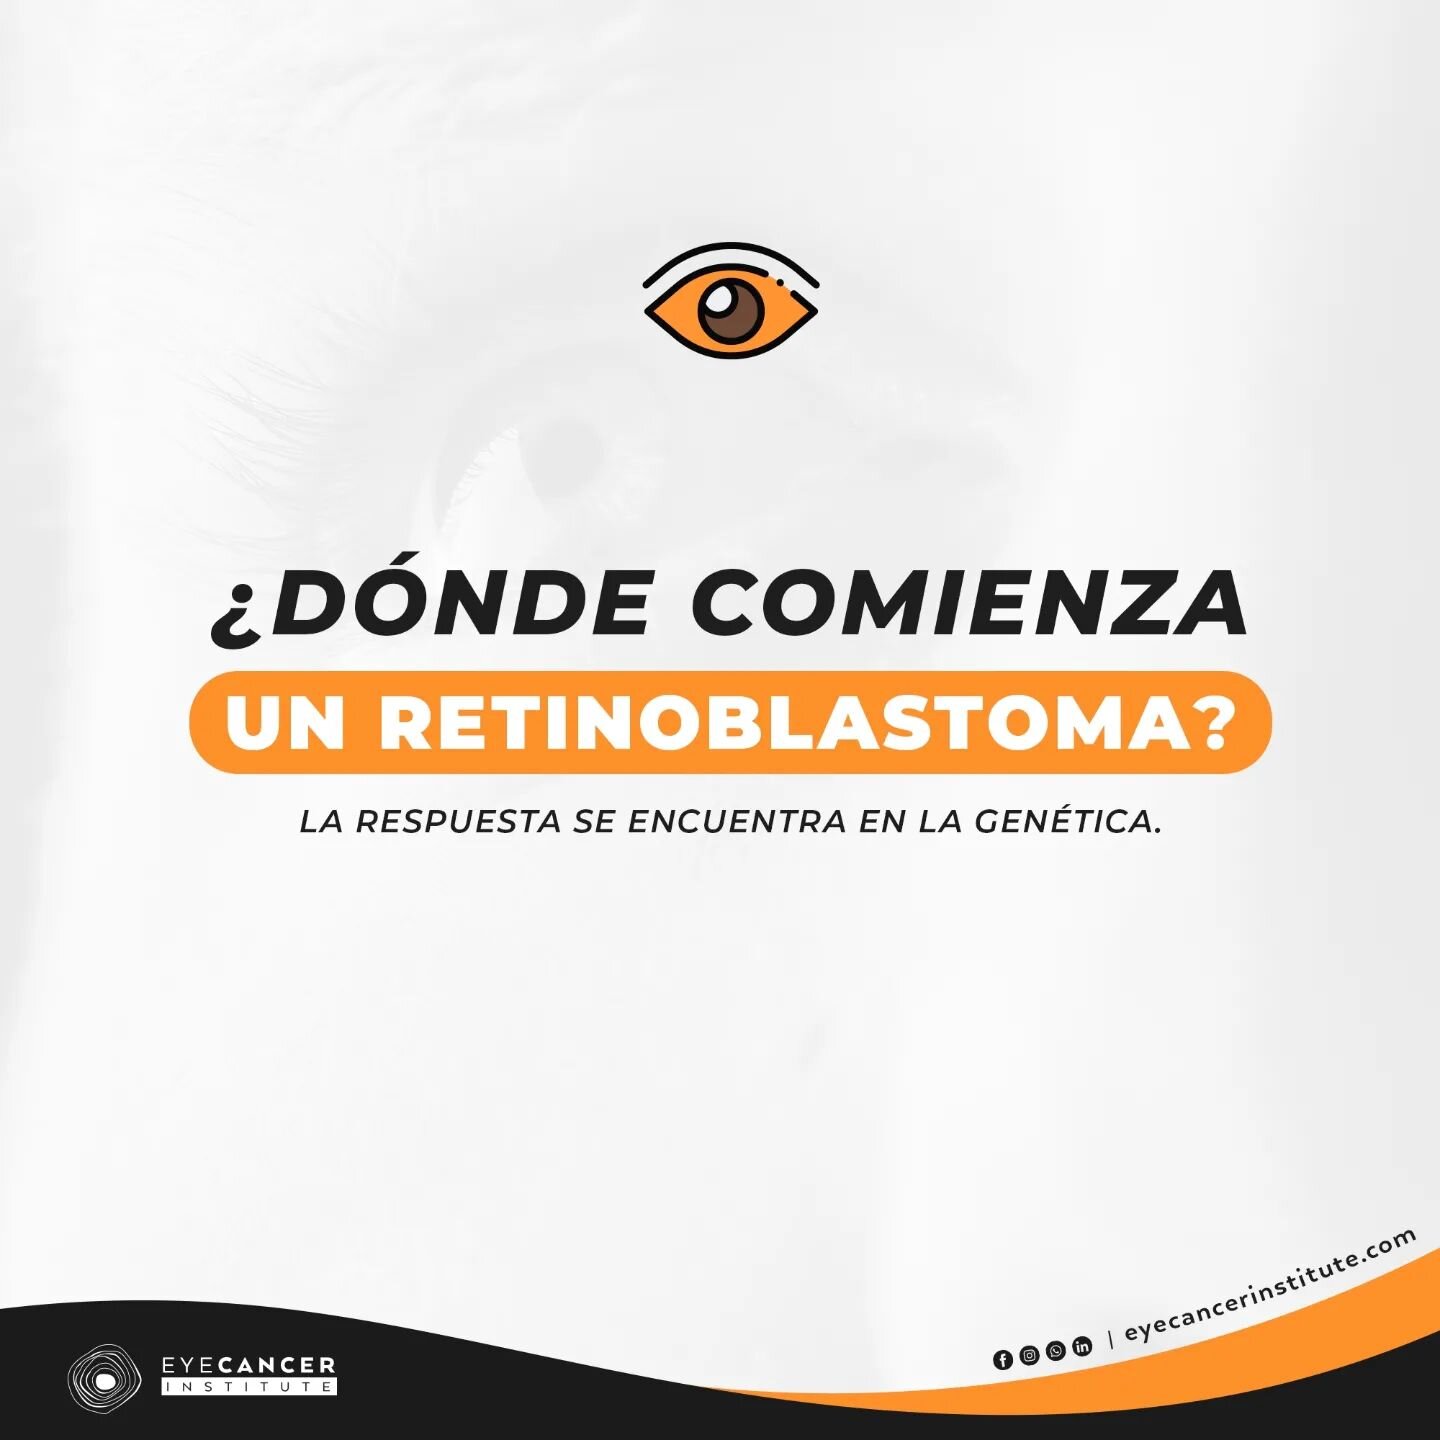 Un #retinoblastoma es un c&aacute;ncer de ojo que empieza en la retina; es decir, el recubrimiento sensible a la luz que se encuentra dentro de tu ojo. 👁

Este tipo de #c&aacute;ncerocular ocurre cuando las c&eacute;lulas nerviosas de la retina muta